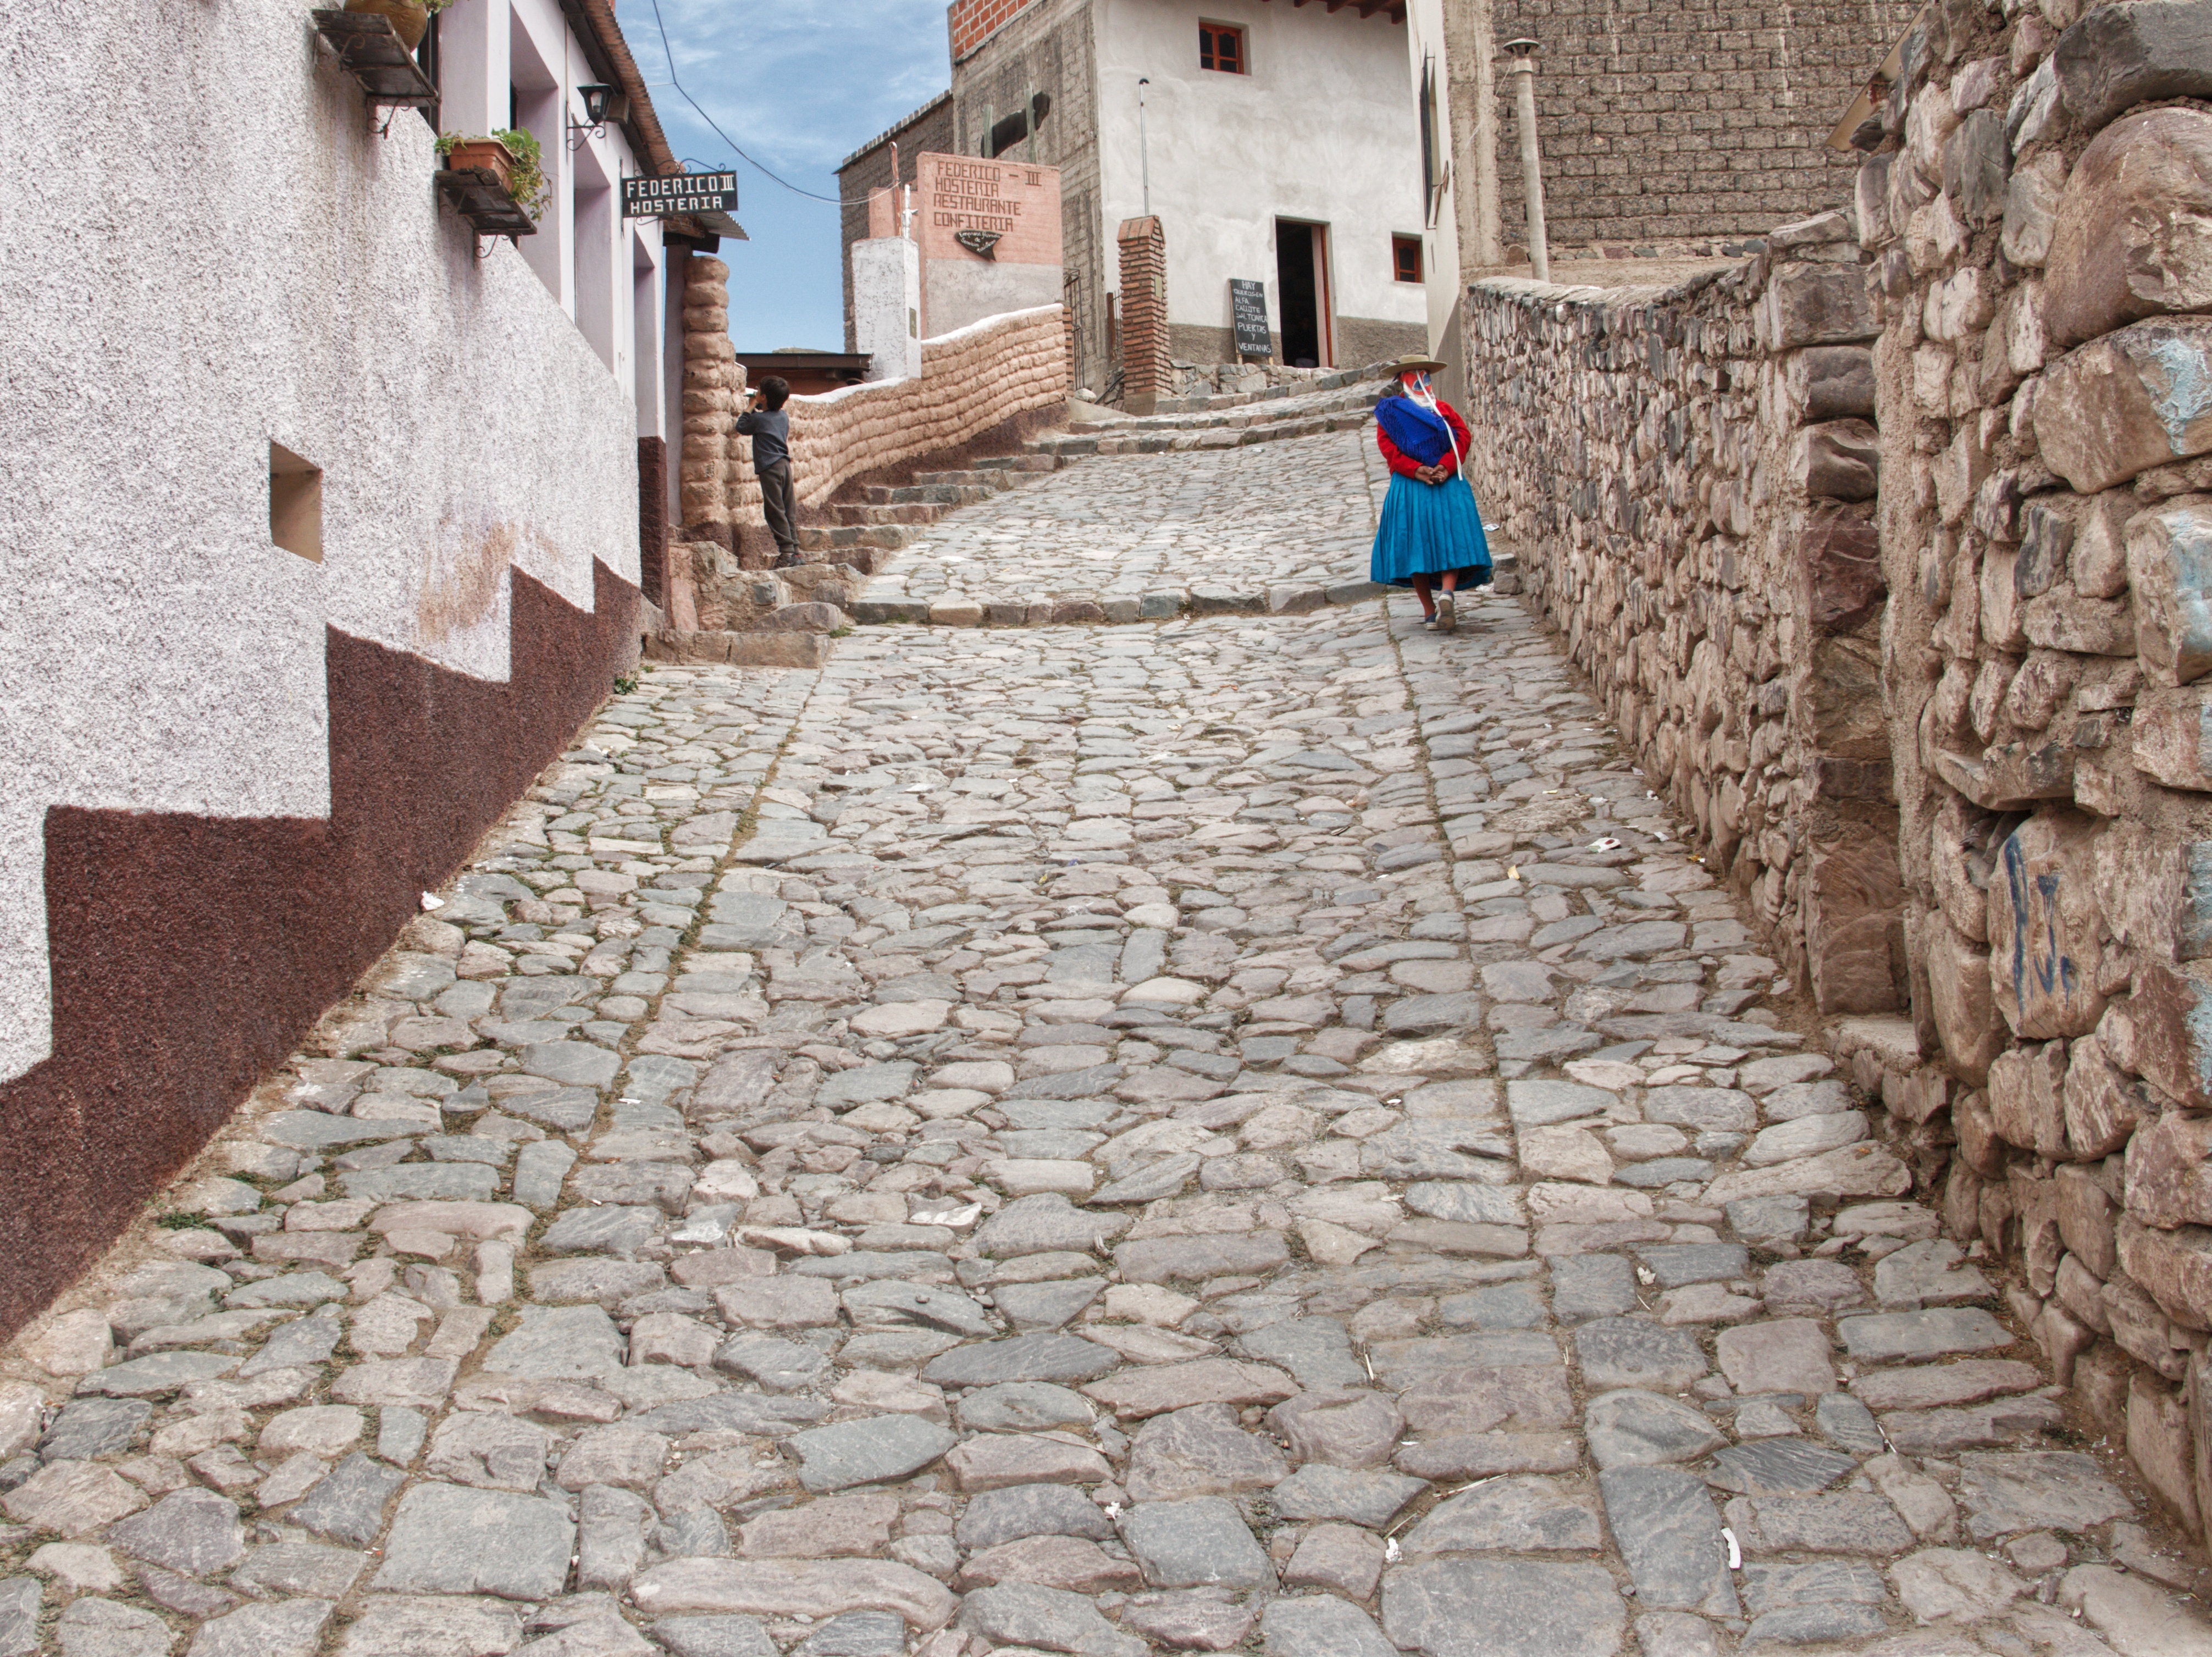 "La gente caminando por las callecitas empedradas son un símbolo de nuestra cultura", asegura Flavio Lamas, herrero nacido y criado en Iruya (Leo Armella @somostiempoespacio)